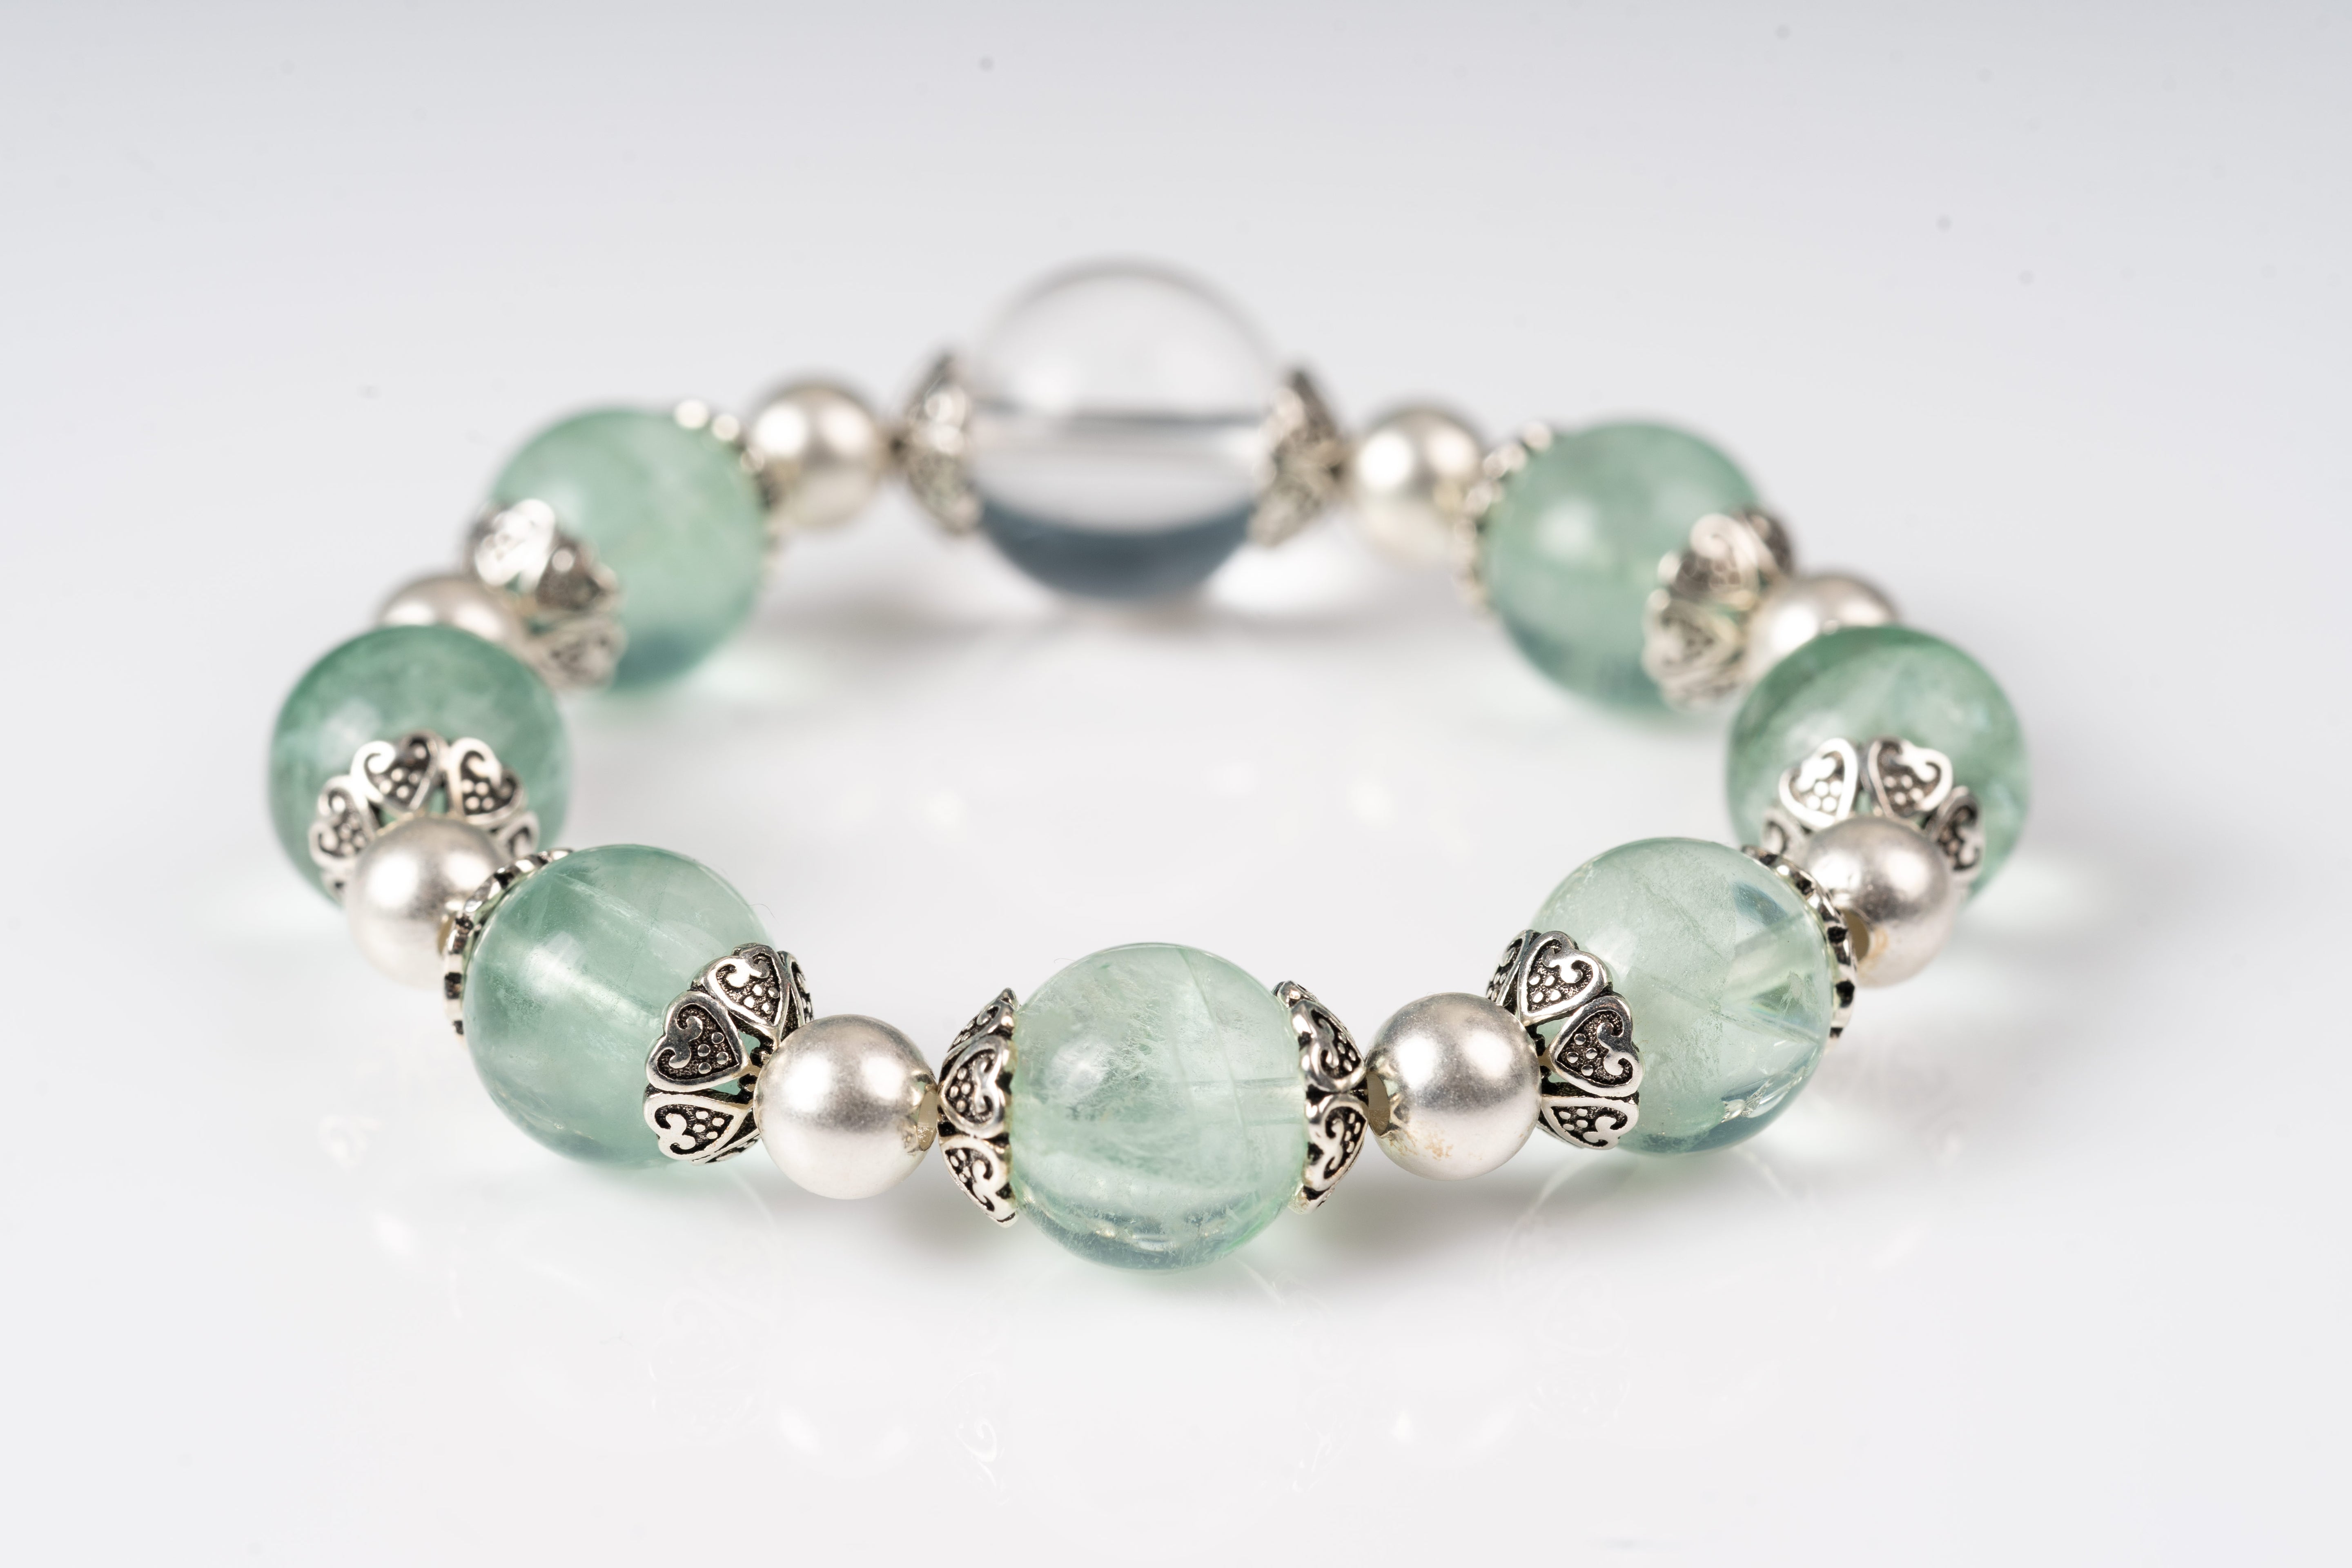 Green fluorite & clear quartz Sterling silver bracelet